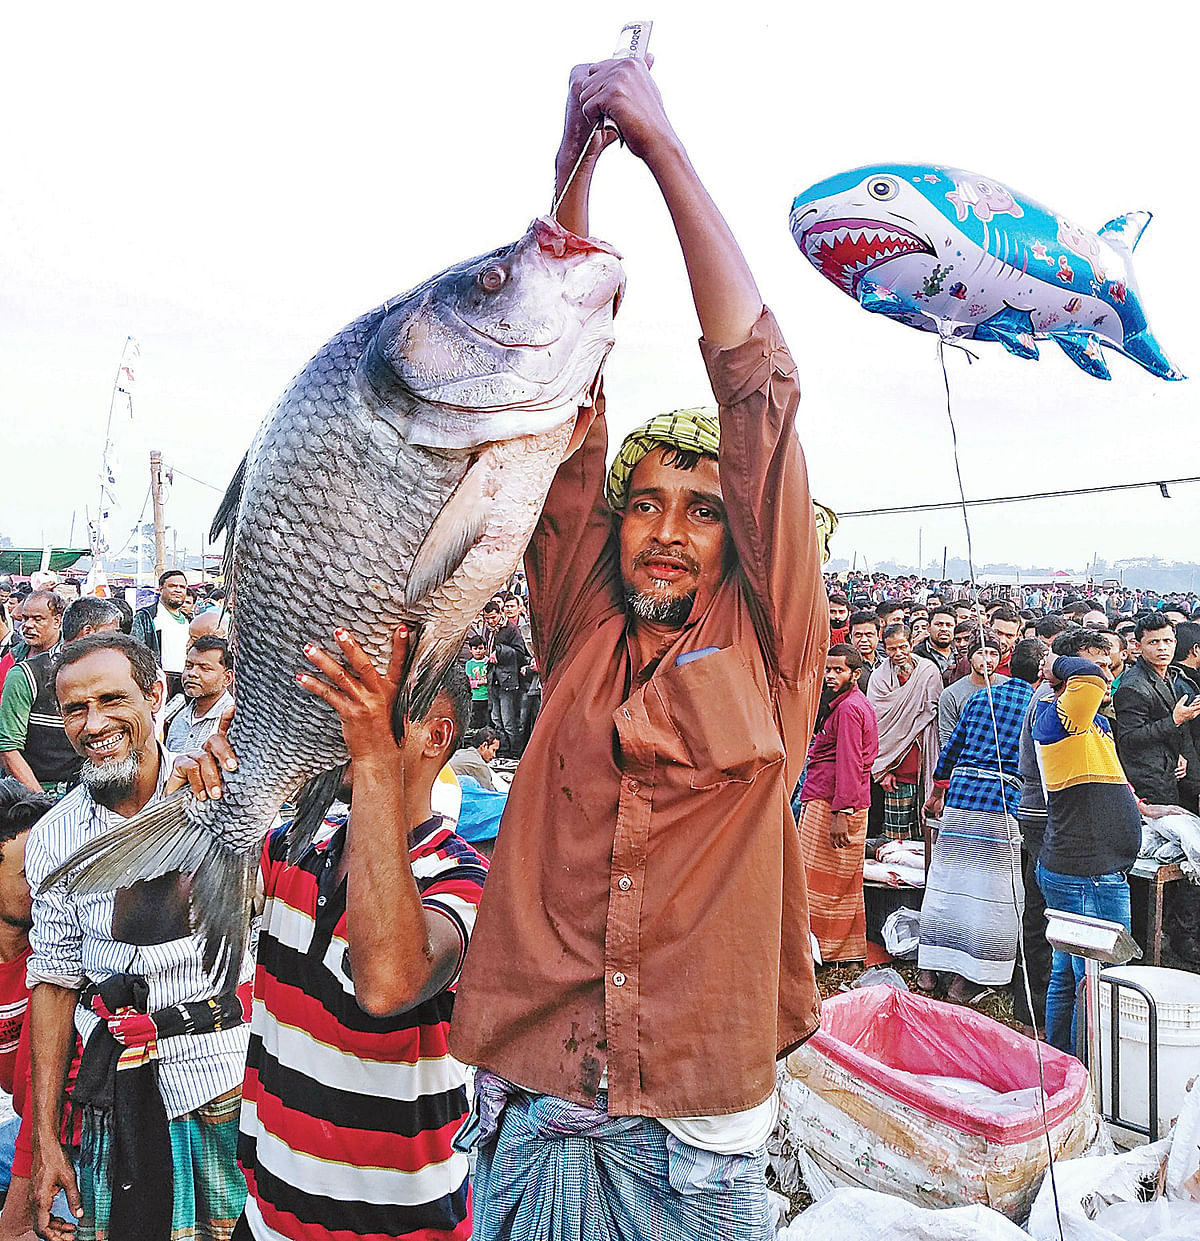 জামাই মেলায় মাছ তুলে ধরেছেন এক বিক্রেতা। গতকাল গাজীপুরের কালীগঞ্জের বিনিরাইল গ্রামে।  ছবি: প্রথম আলো